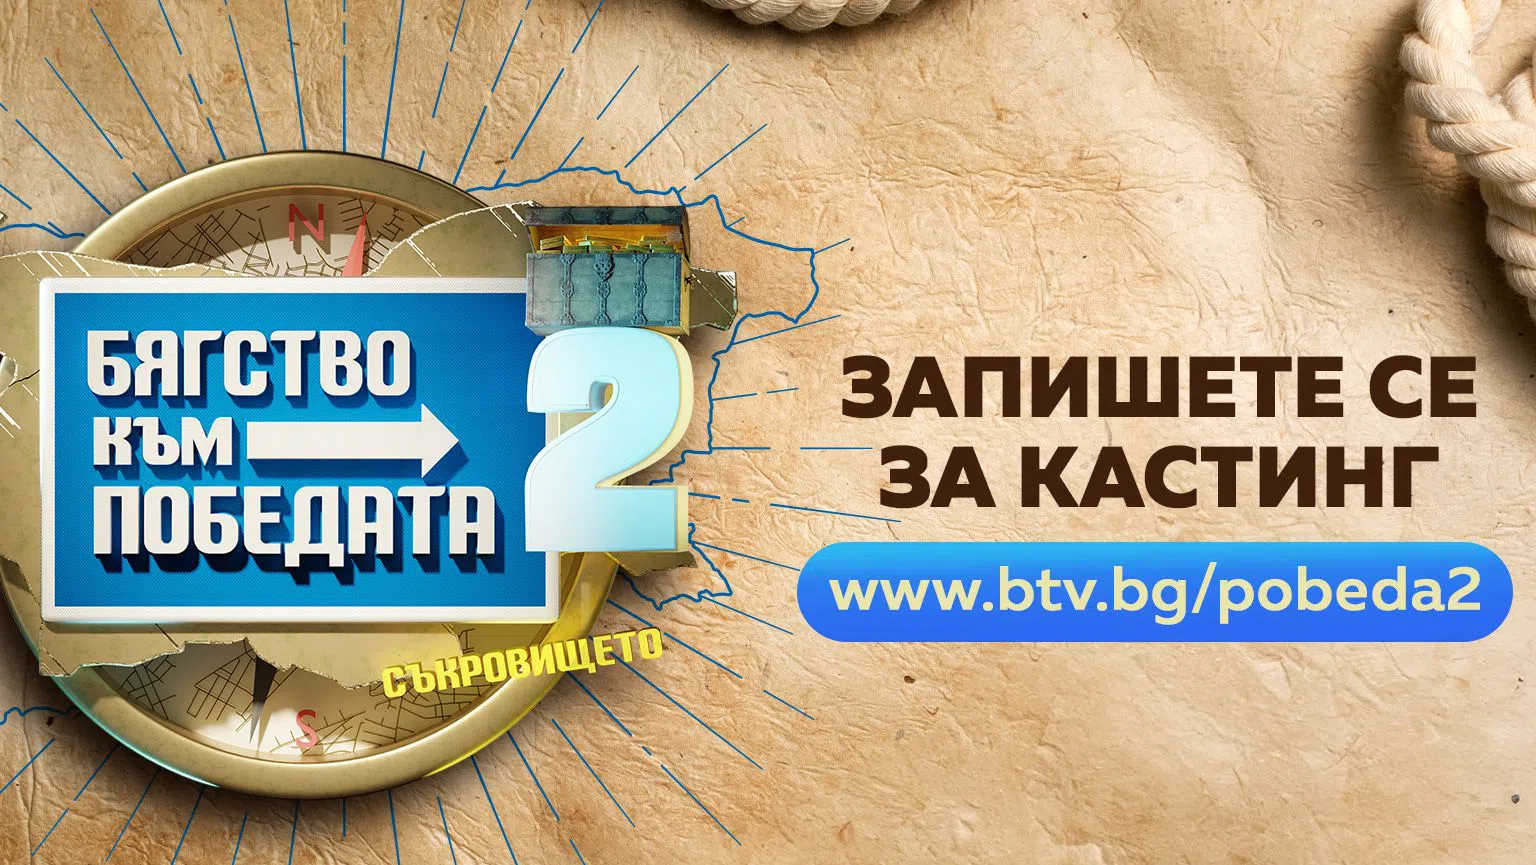 "Бягство към победата" ще предложи на участниците пътуване из България.